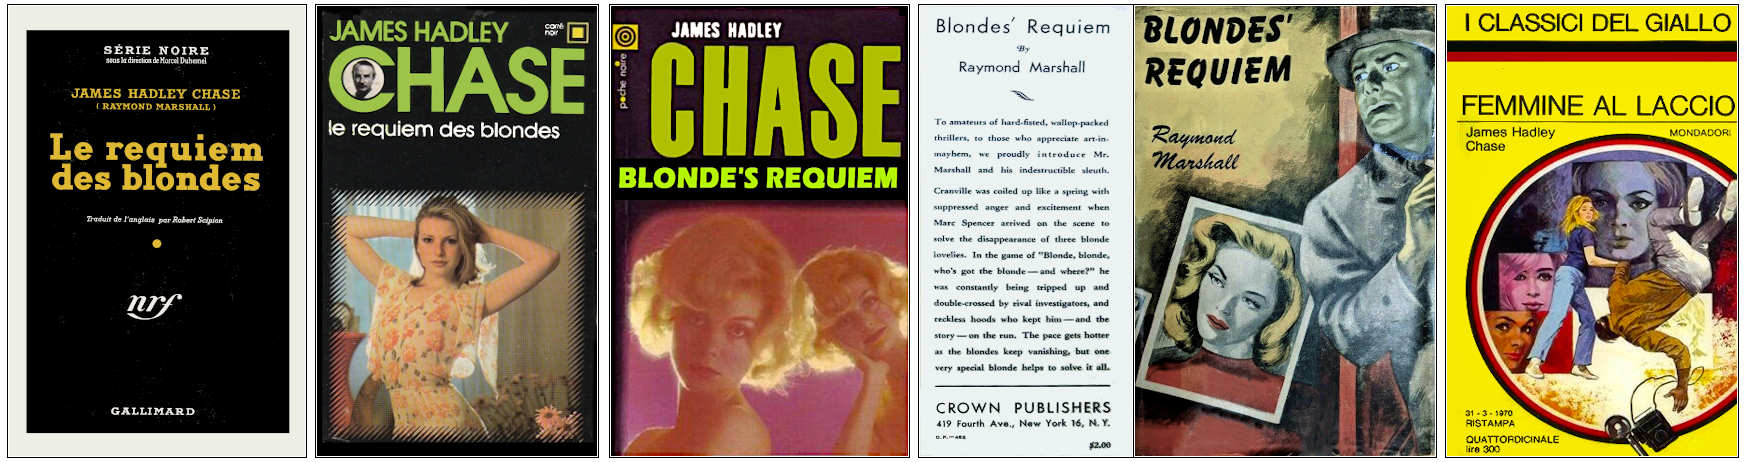 James Hadley Chase - Le Requiem des blondes - Éditions Gallimard (Série noire, Carré noir et Poche noire), Crown Publishers et Mondadori